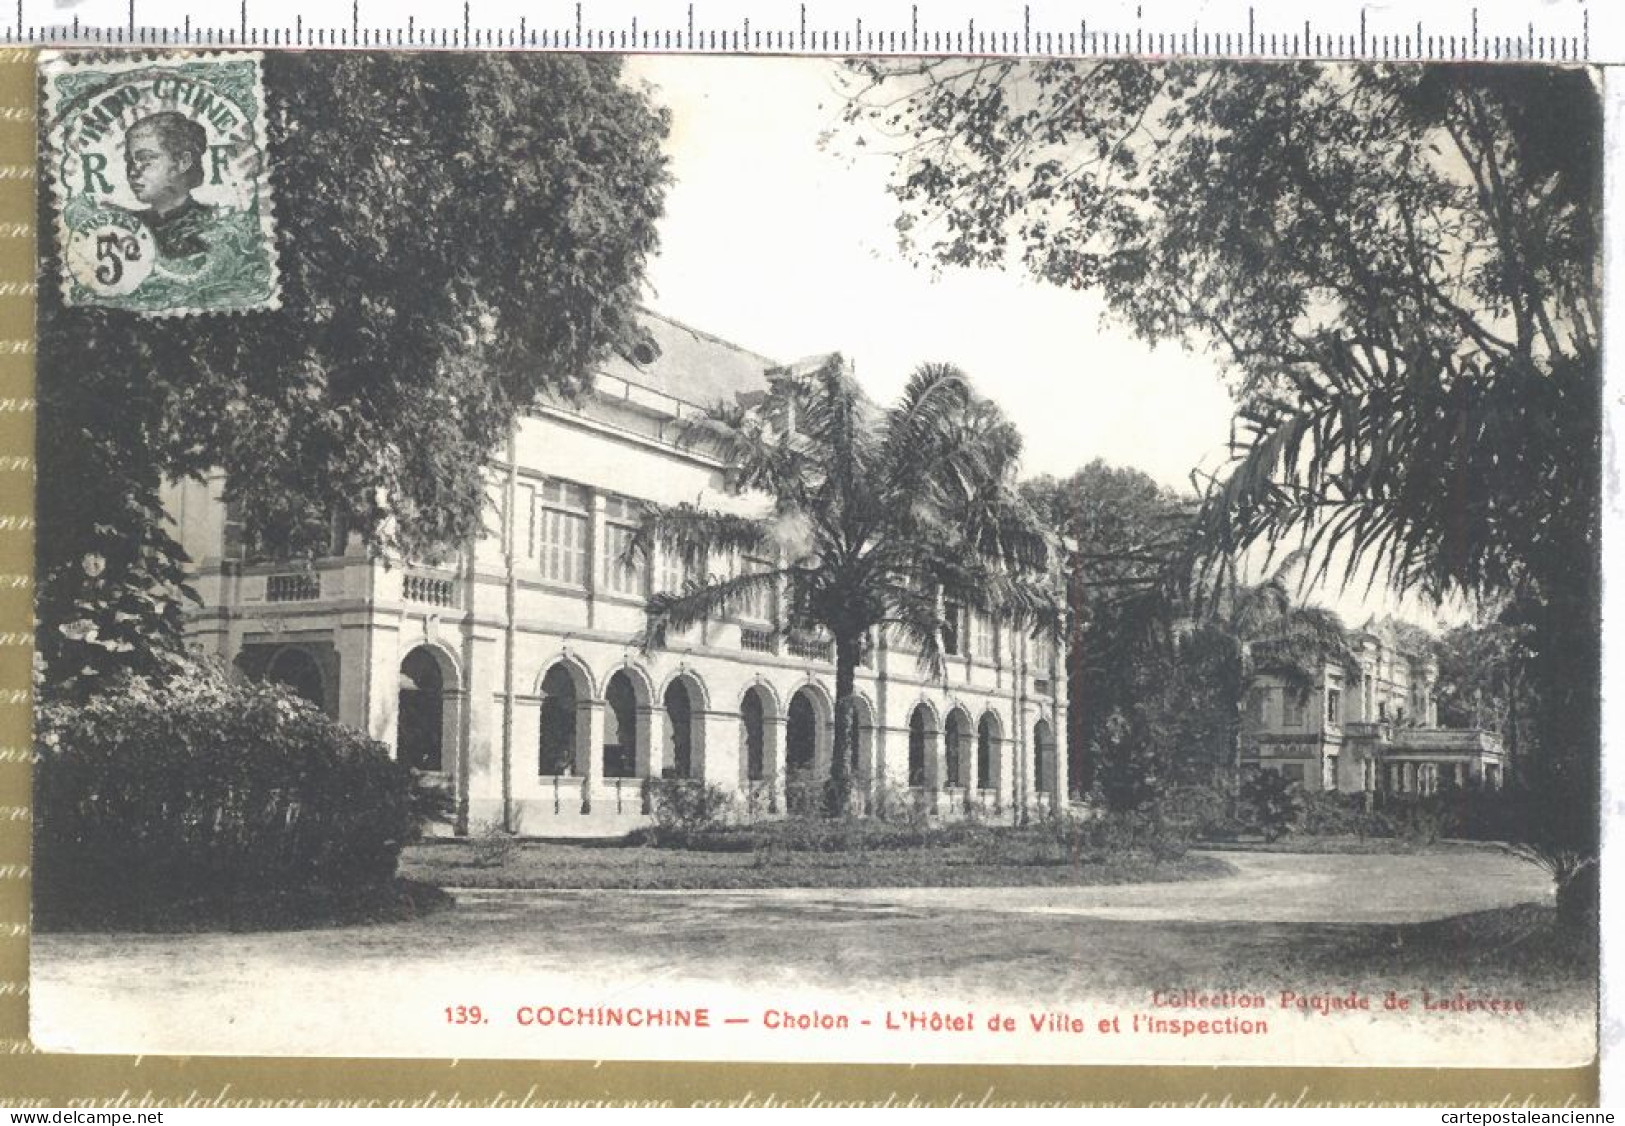 01016 ● CHOLON Cochinchine Hotel De Ville Inspection 1910 à Capitaine FOLLIET 26 Concession Hanoï Tonkin POUJADE LADEVEZ - Vietnam